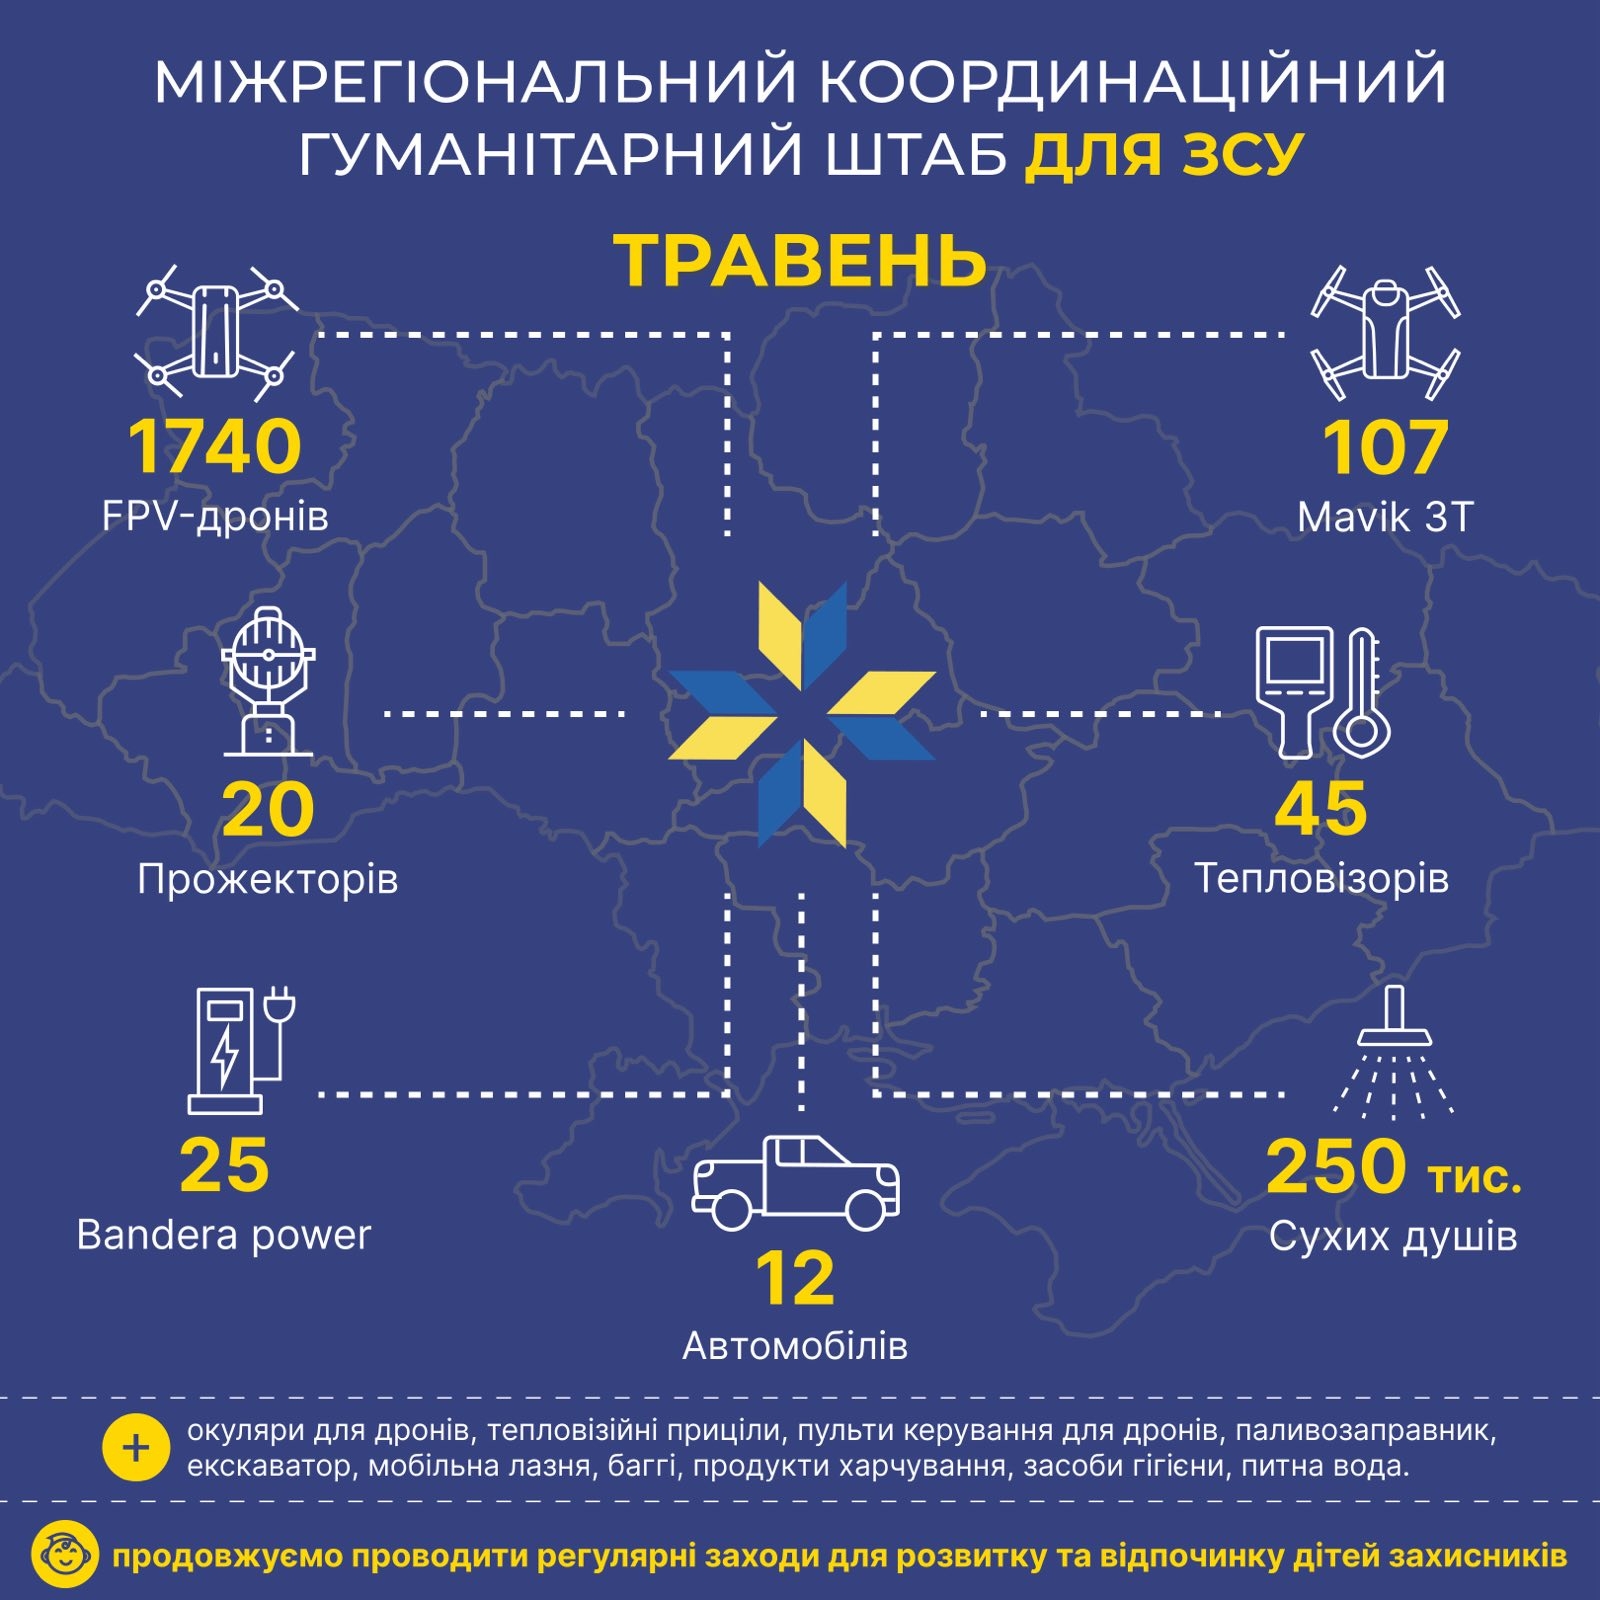 У травні Гуманітарний штаб передав українським захисникам 1740 FPV-дронів